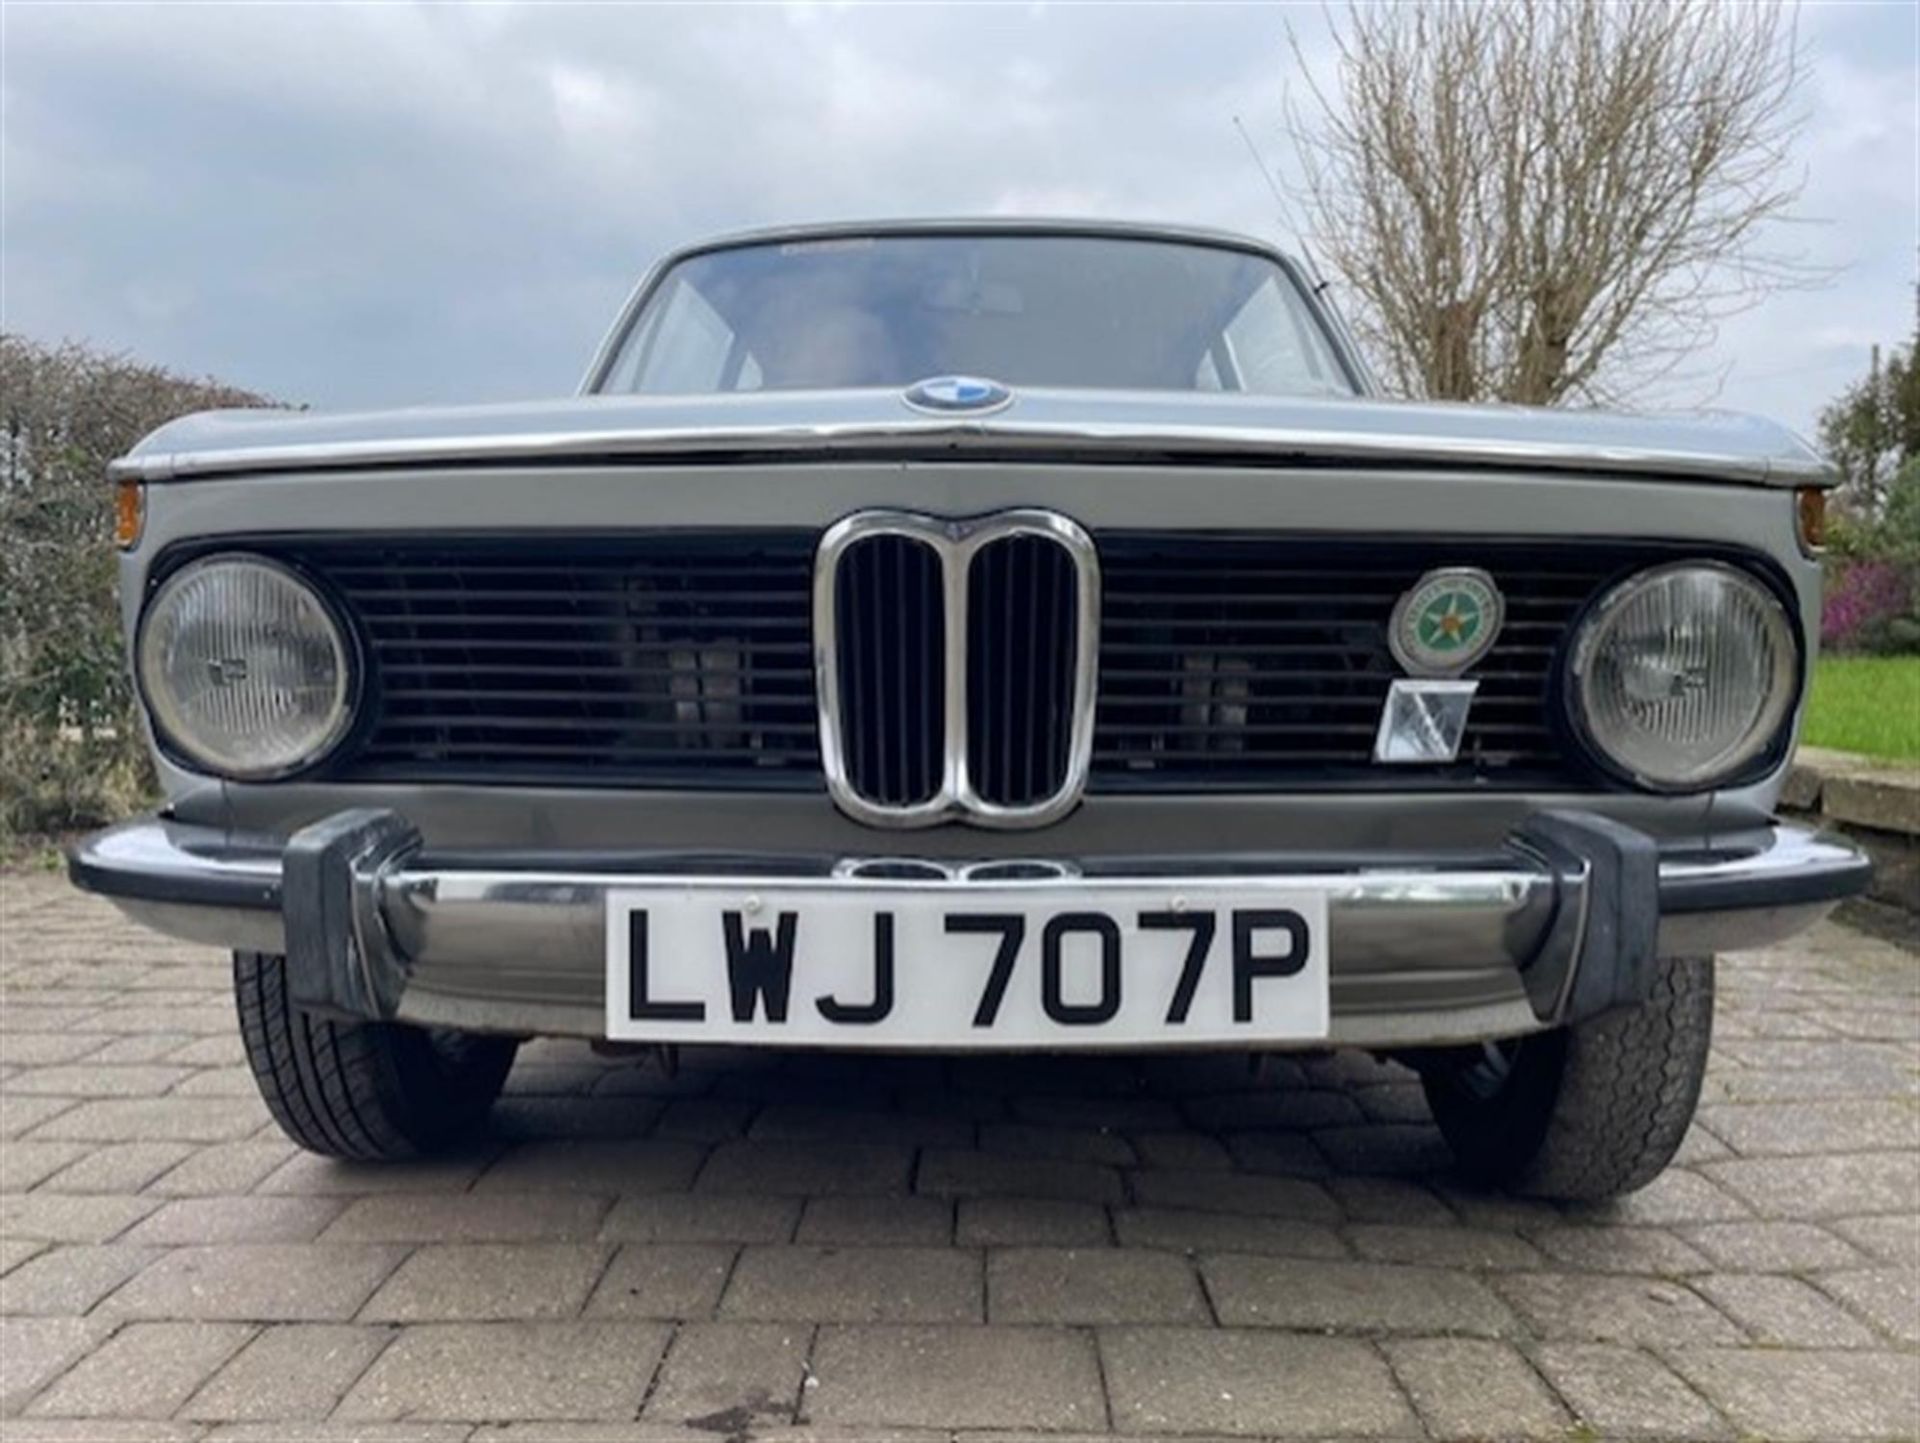 1976 BMW 2002 (E10/73) - Image 9 of 10